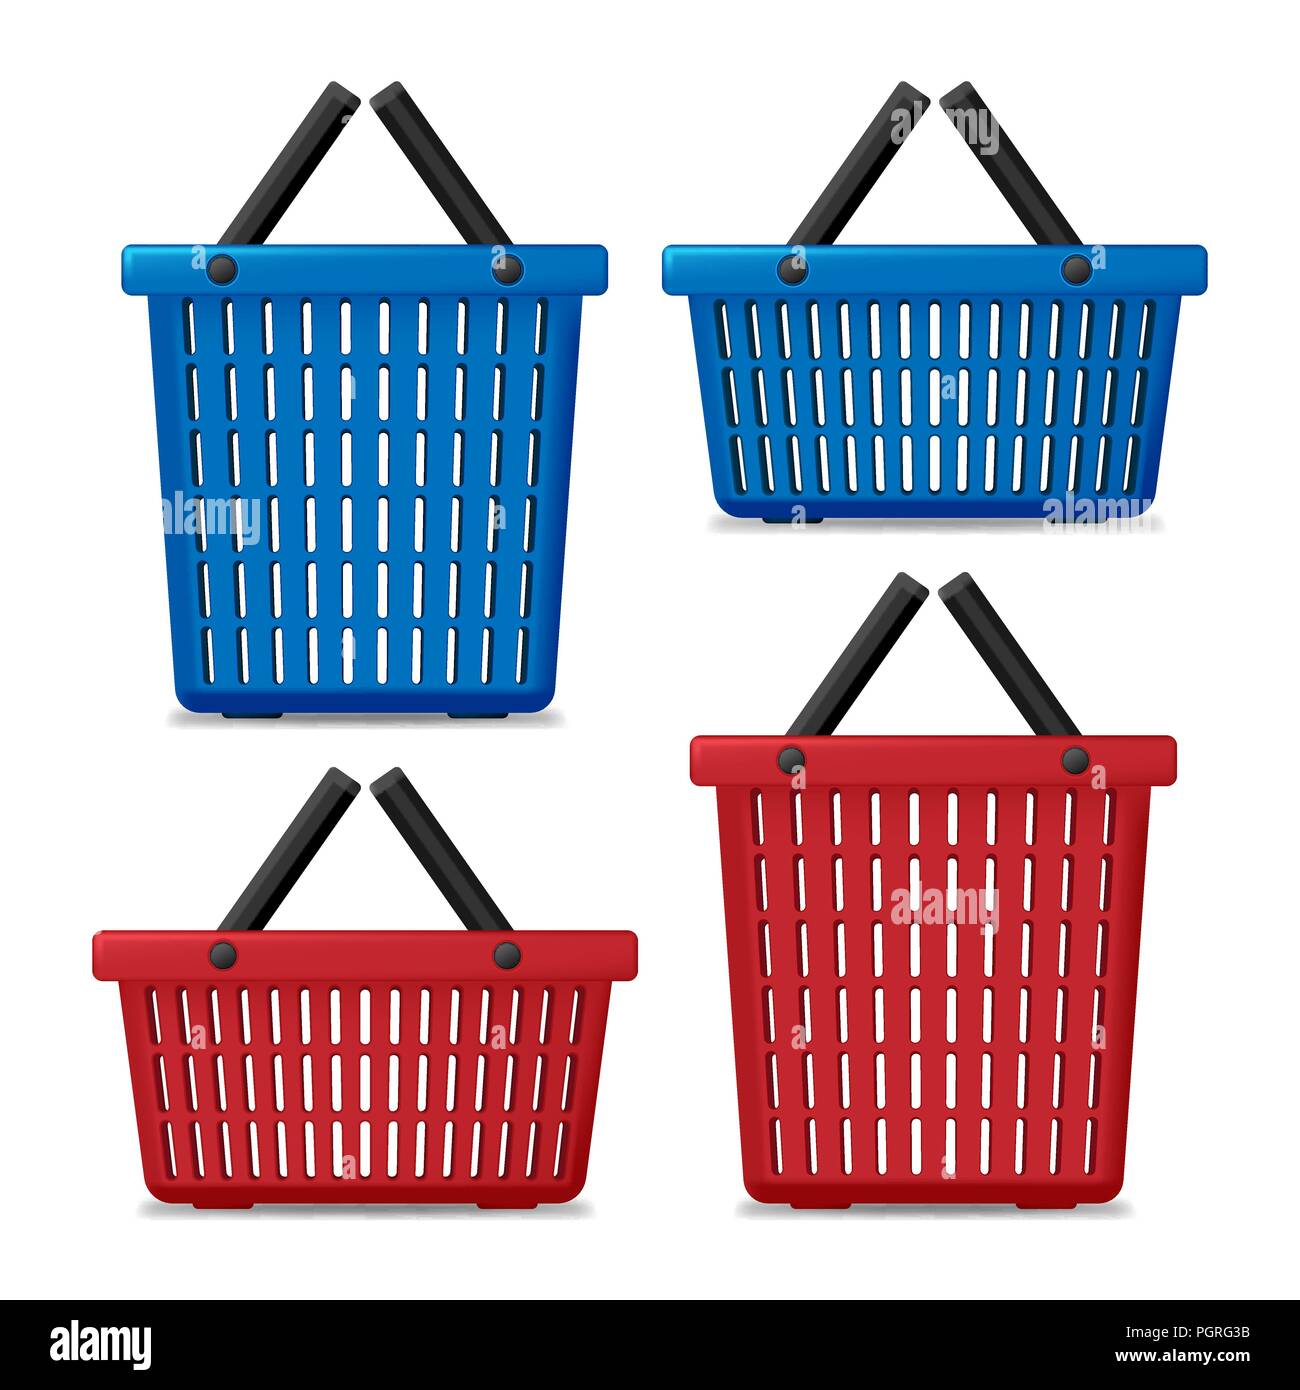 Satz von Roten und Blauen leeren Wäschekorb isoliert. Korb mit Waschmaschine zu waschen. Vector Illustration Stock Vektor